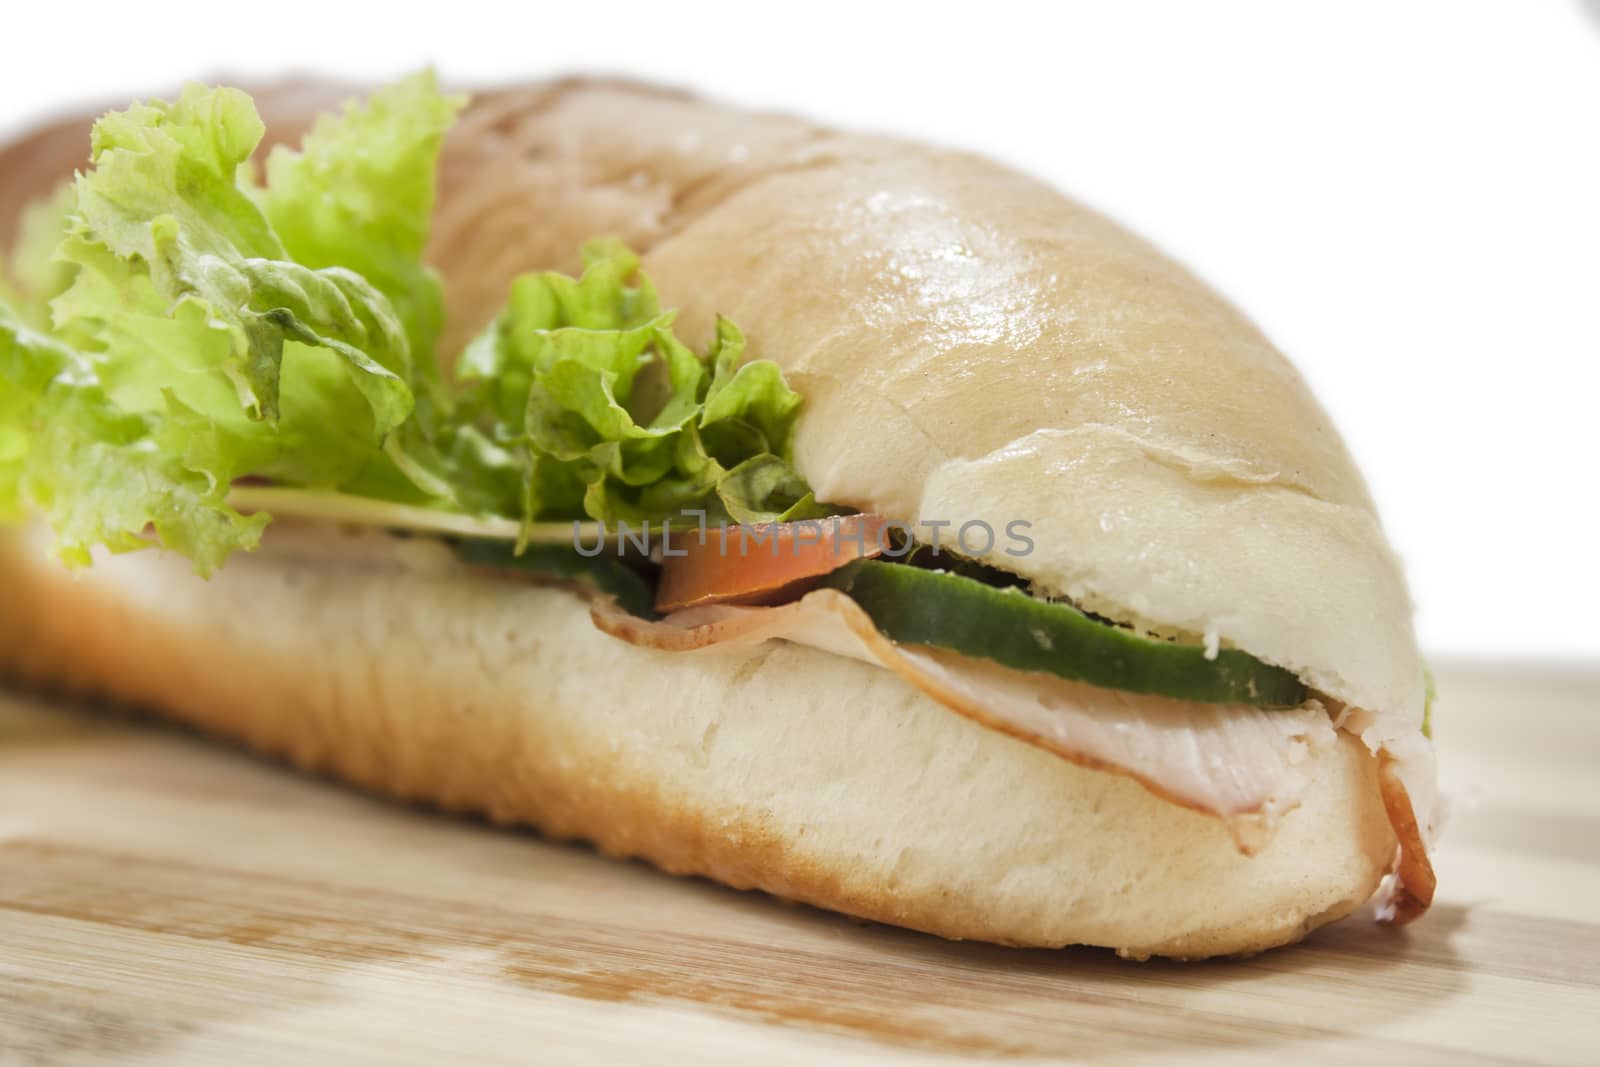 Sandwich in shalow depth of field on wooden board.